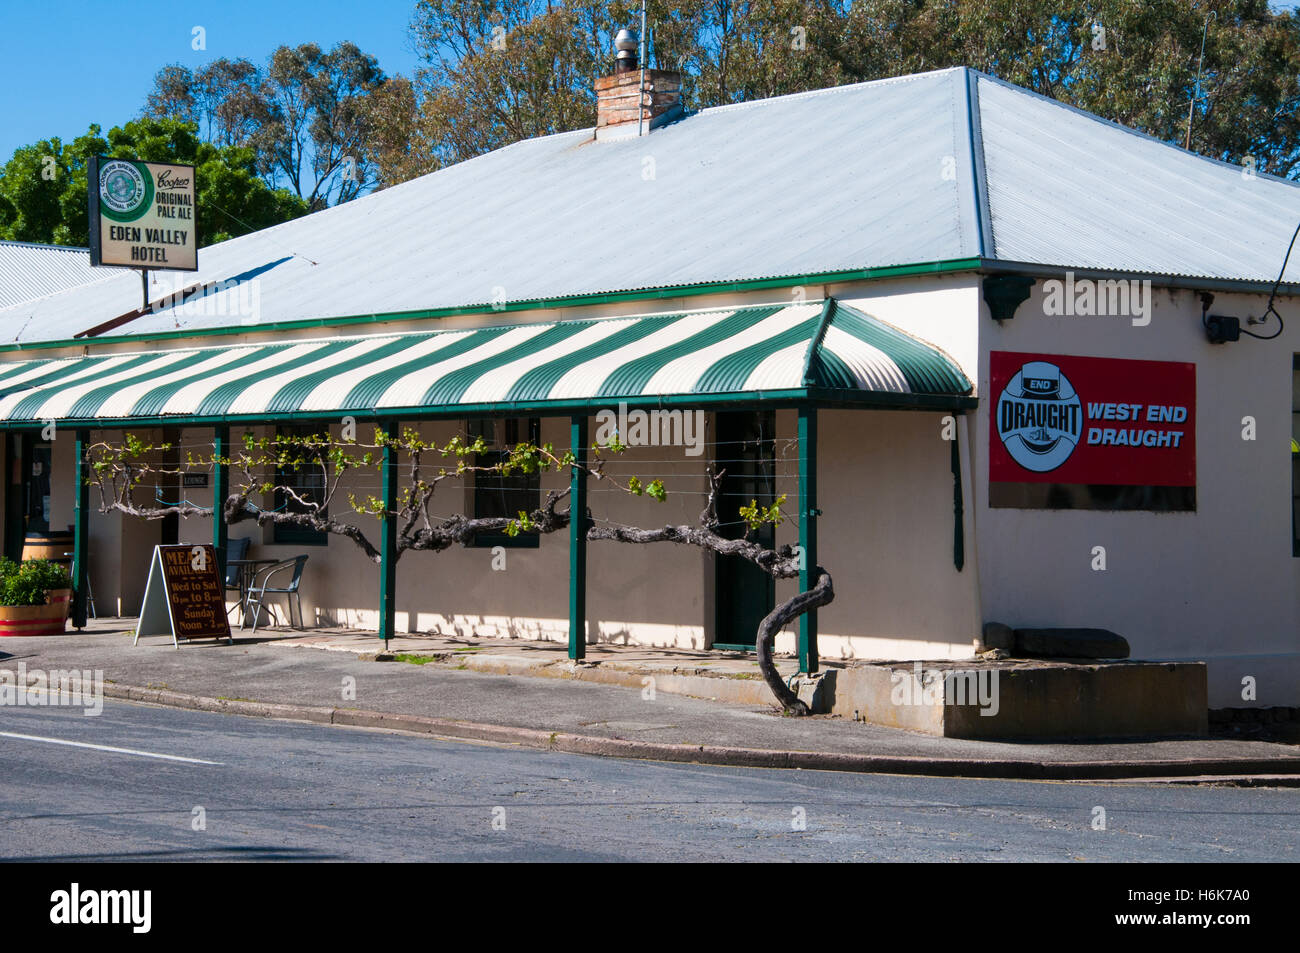 Country pub in stile veranda all'Eden Valley, South Australia Foto Stock